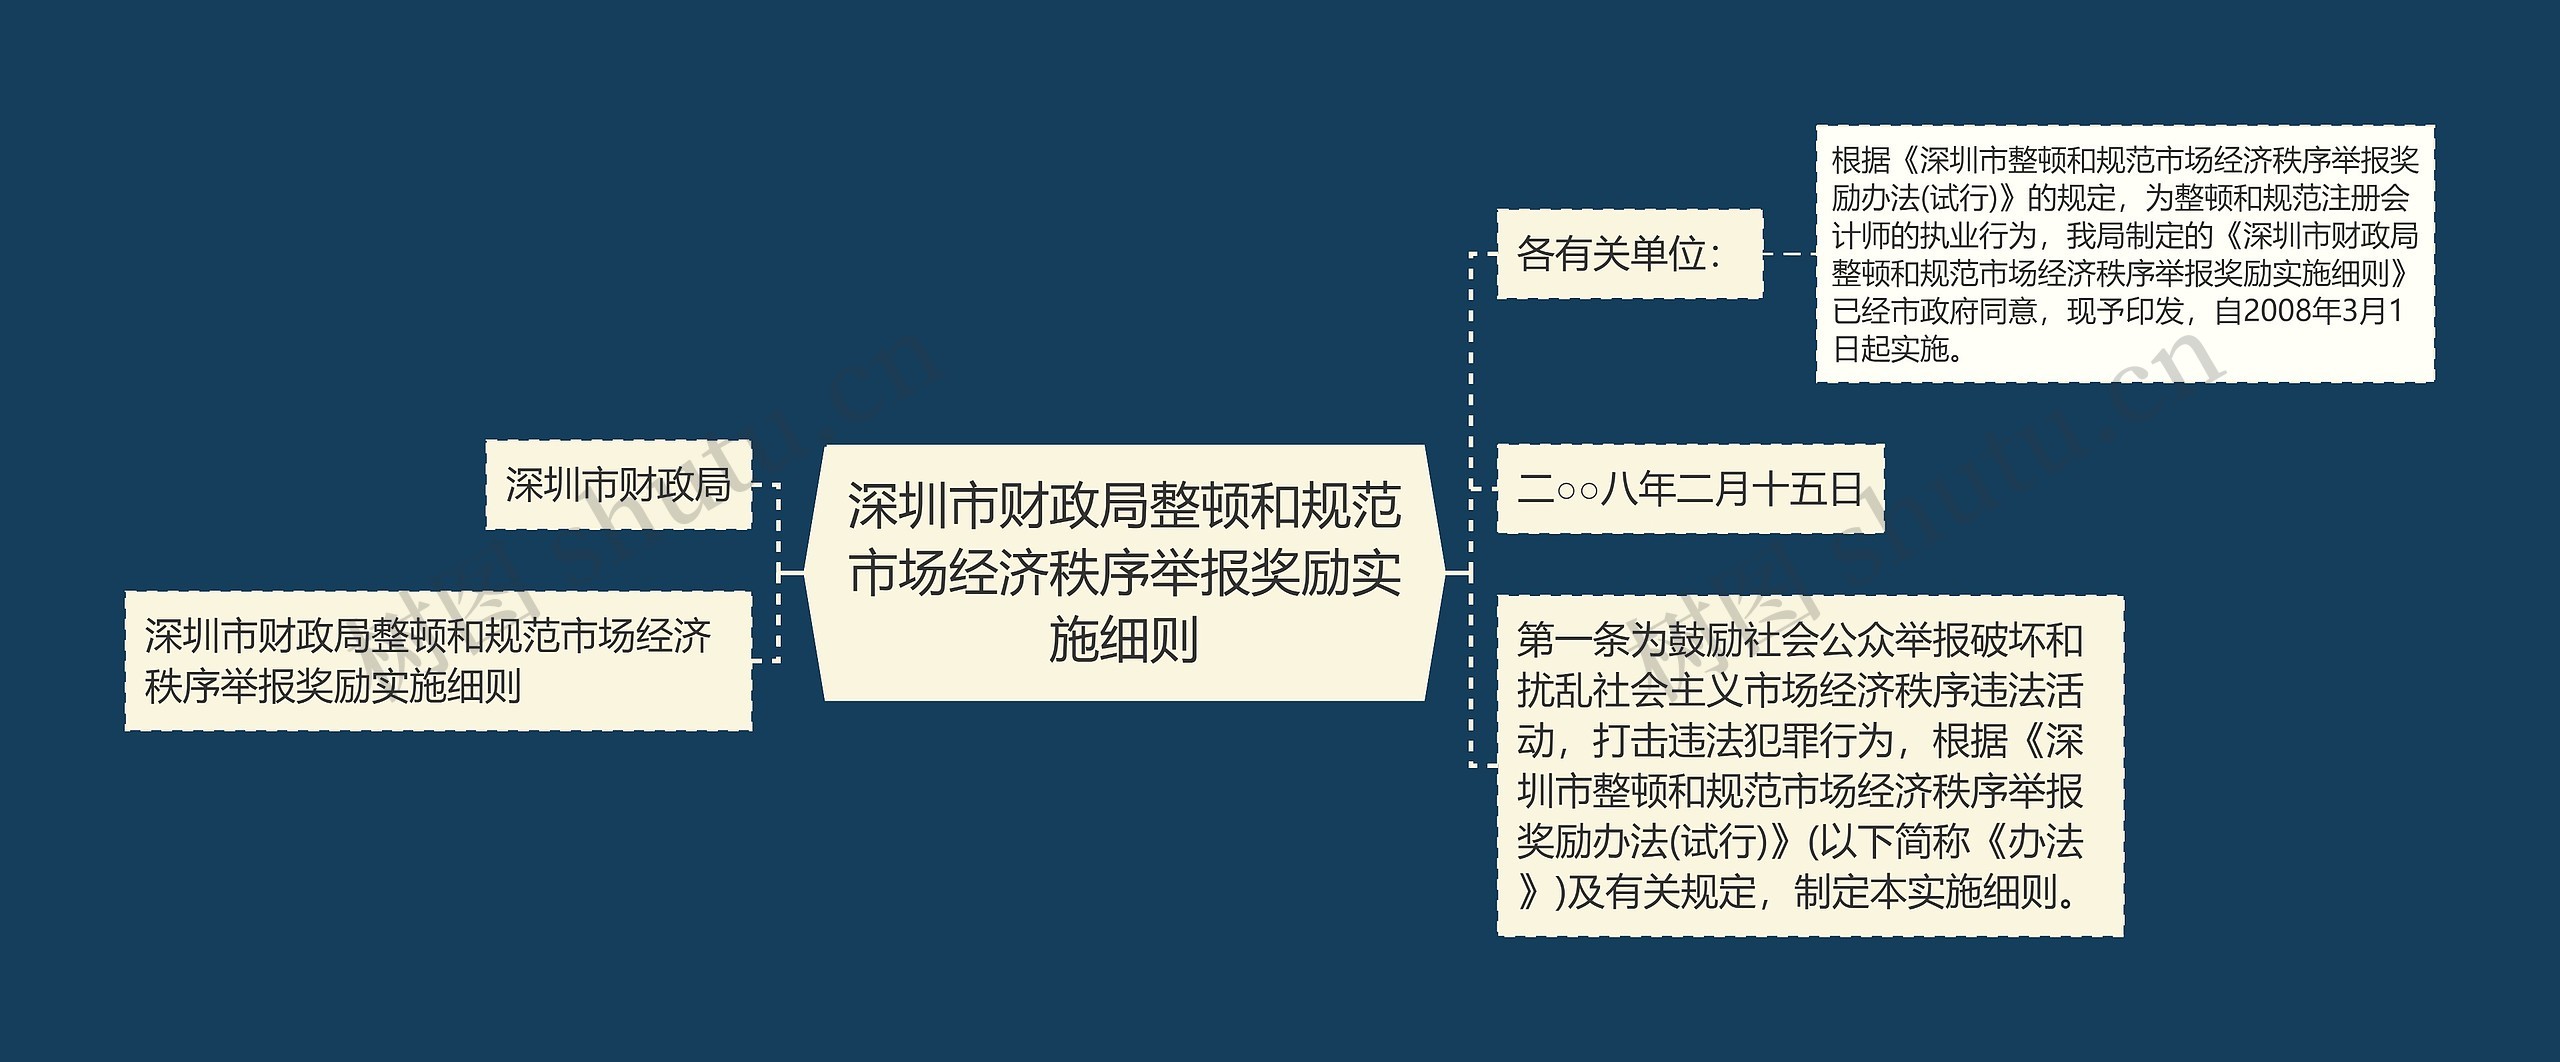 深圳市财政局整顿和规范市场经济秩序举报奖励实施细则思维导图